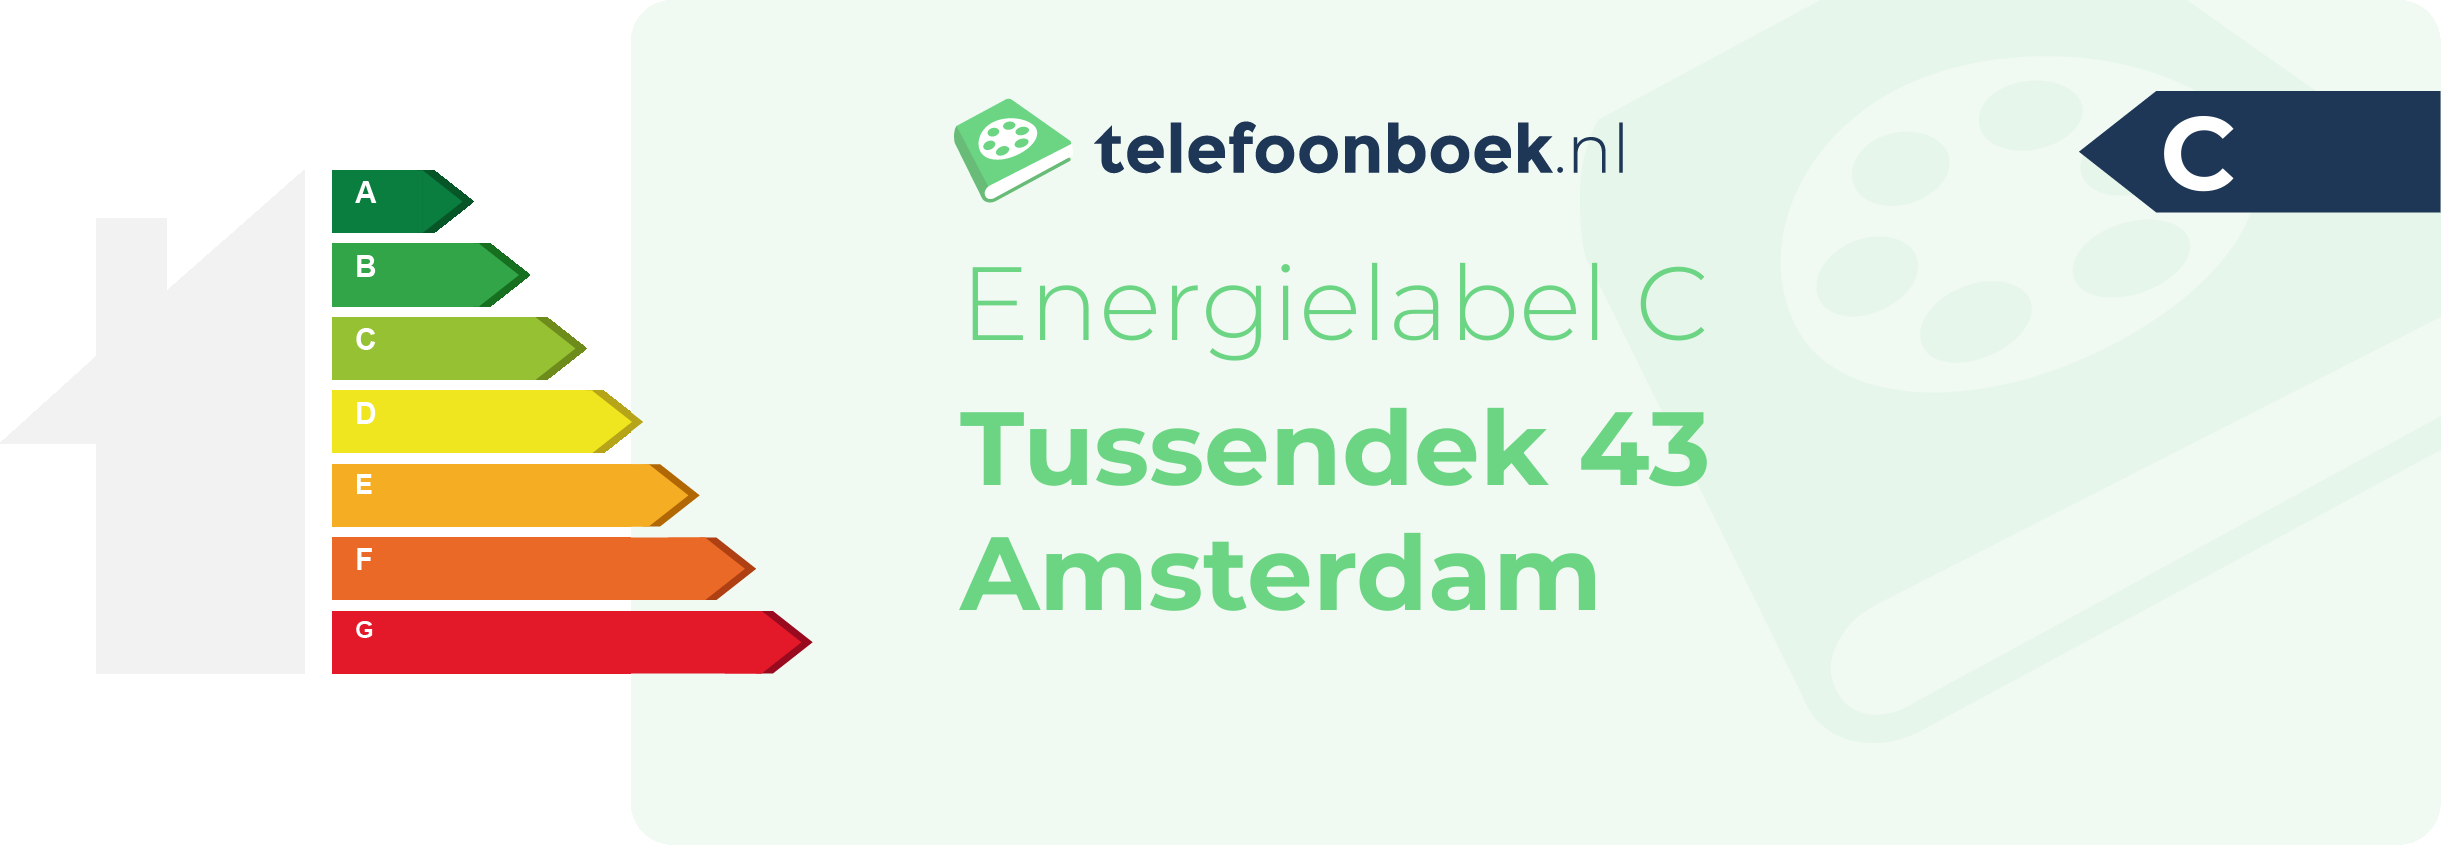 Energielabel Tussendek 43 Amsterdam